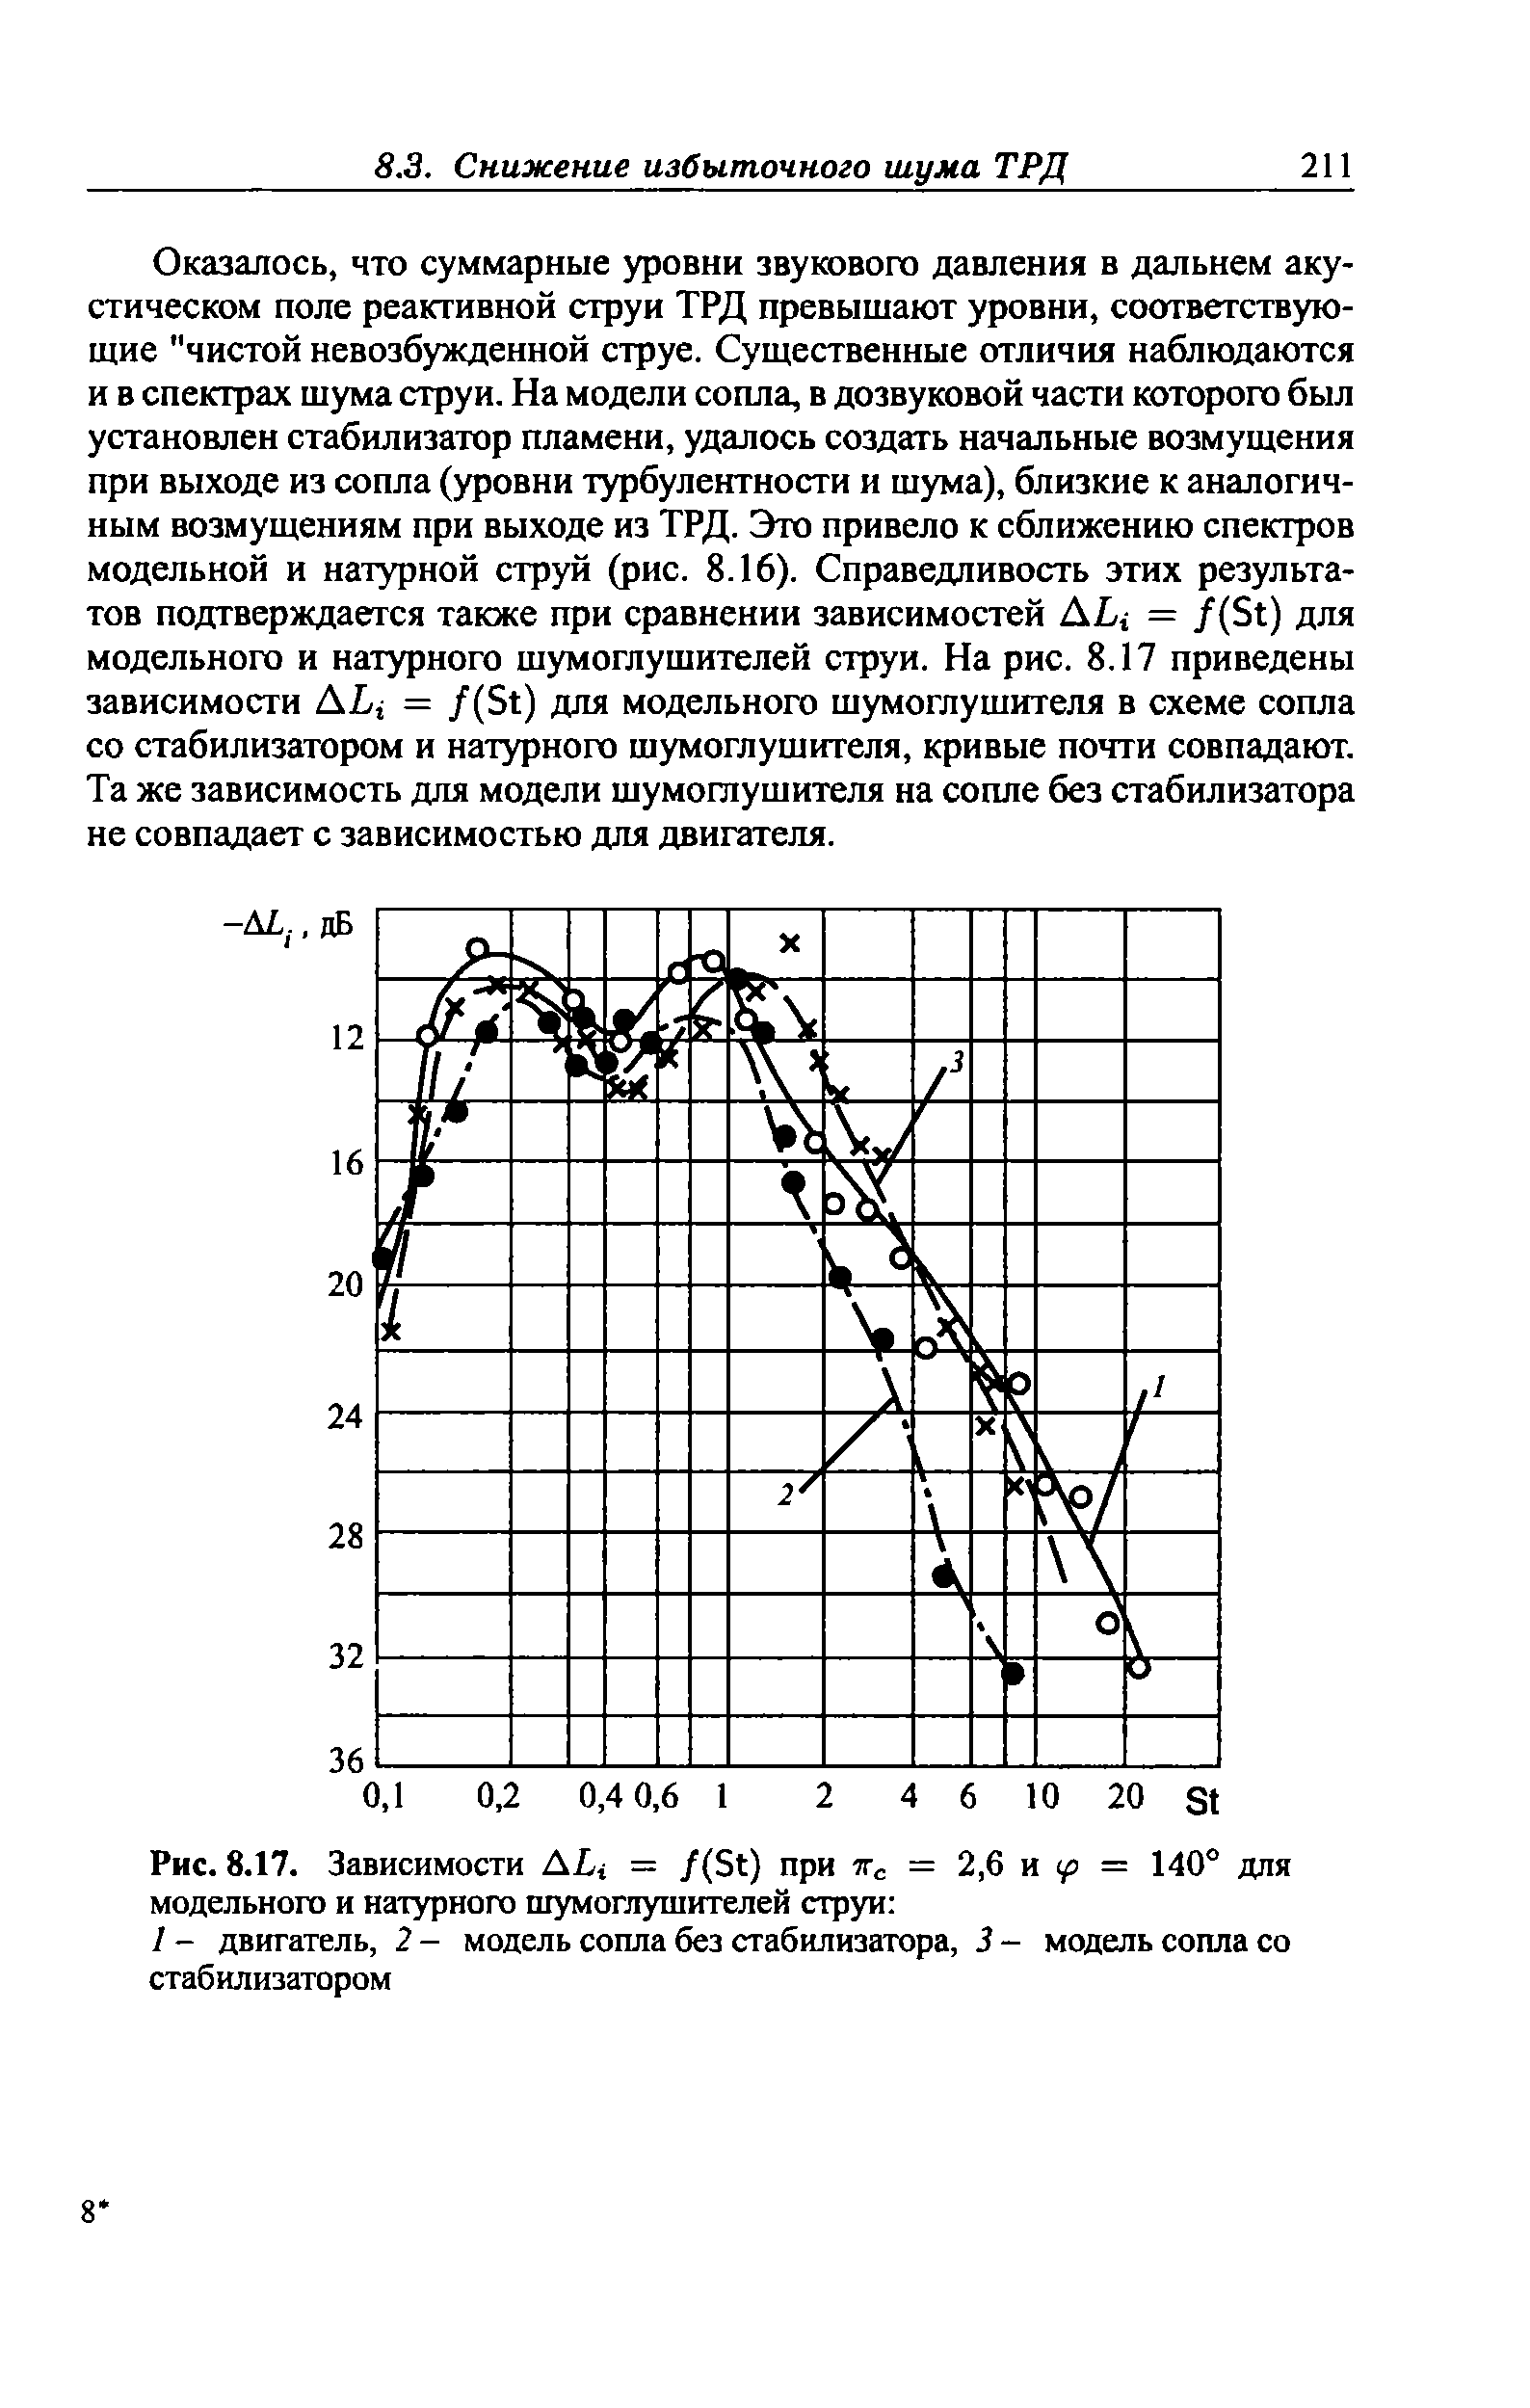 Рис. 8.17. Зависимости AL = /(St) при тгс = 2,6 и = 140° для модельного и натурного шумоглушителей струи 
